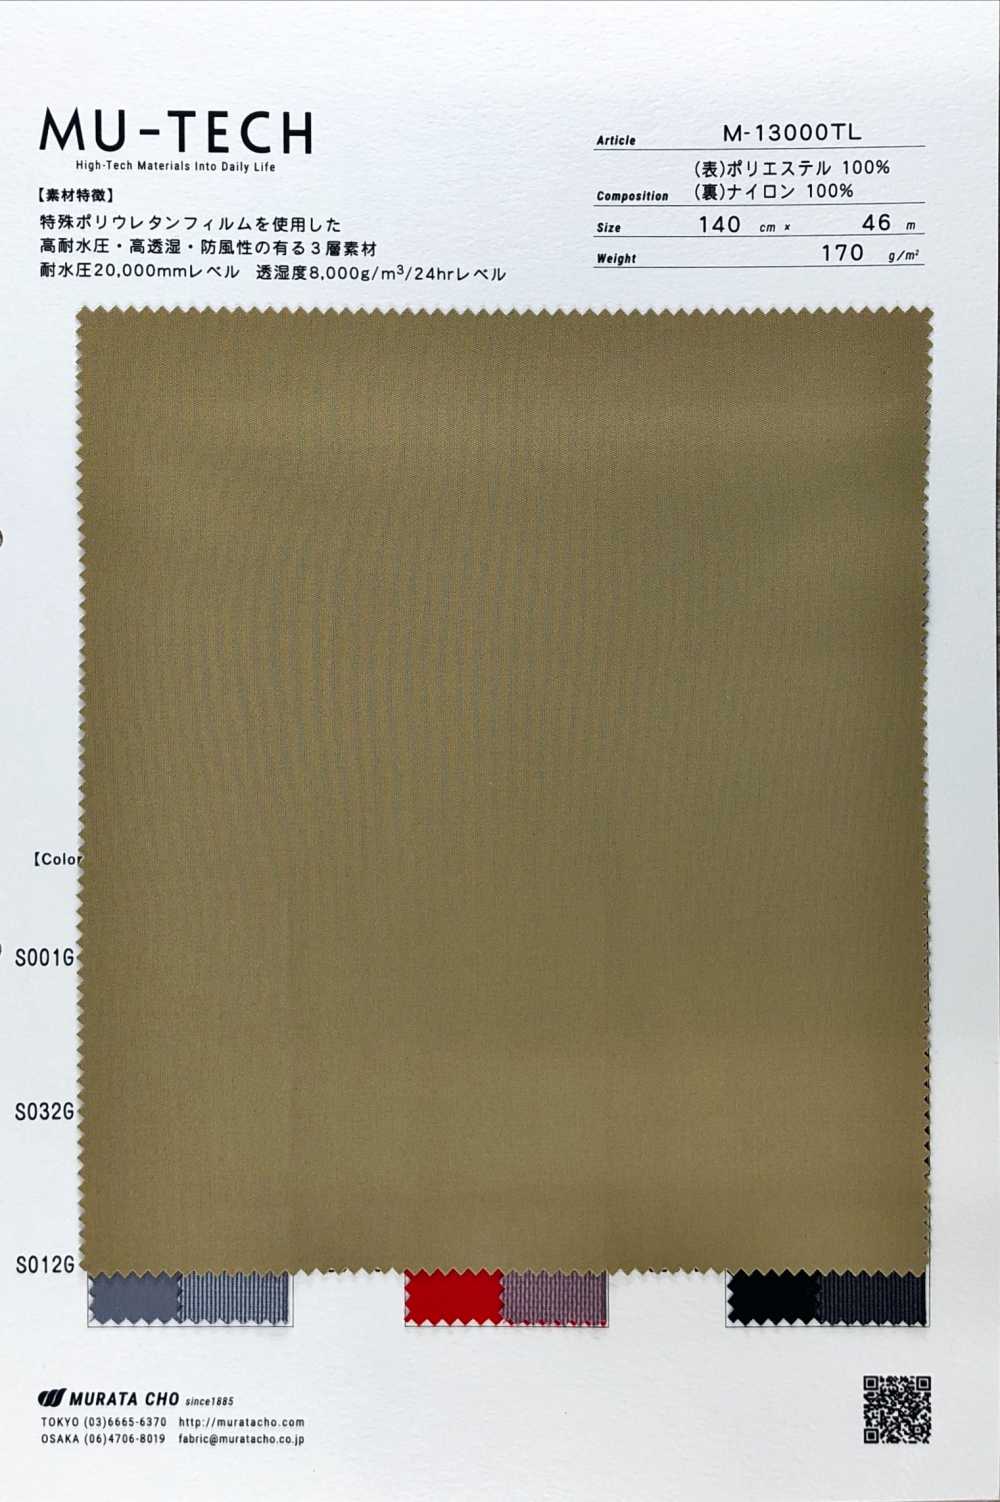 M-13000TL Hochleistungs-3-Lagen-Polyester-Strick[Textilgewebe] Muratacho